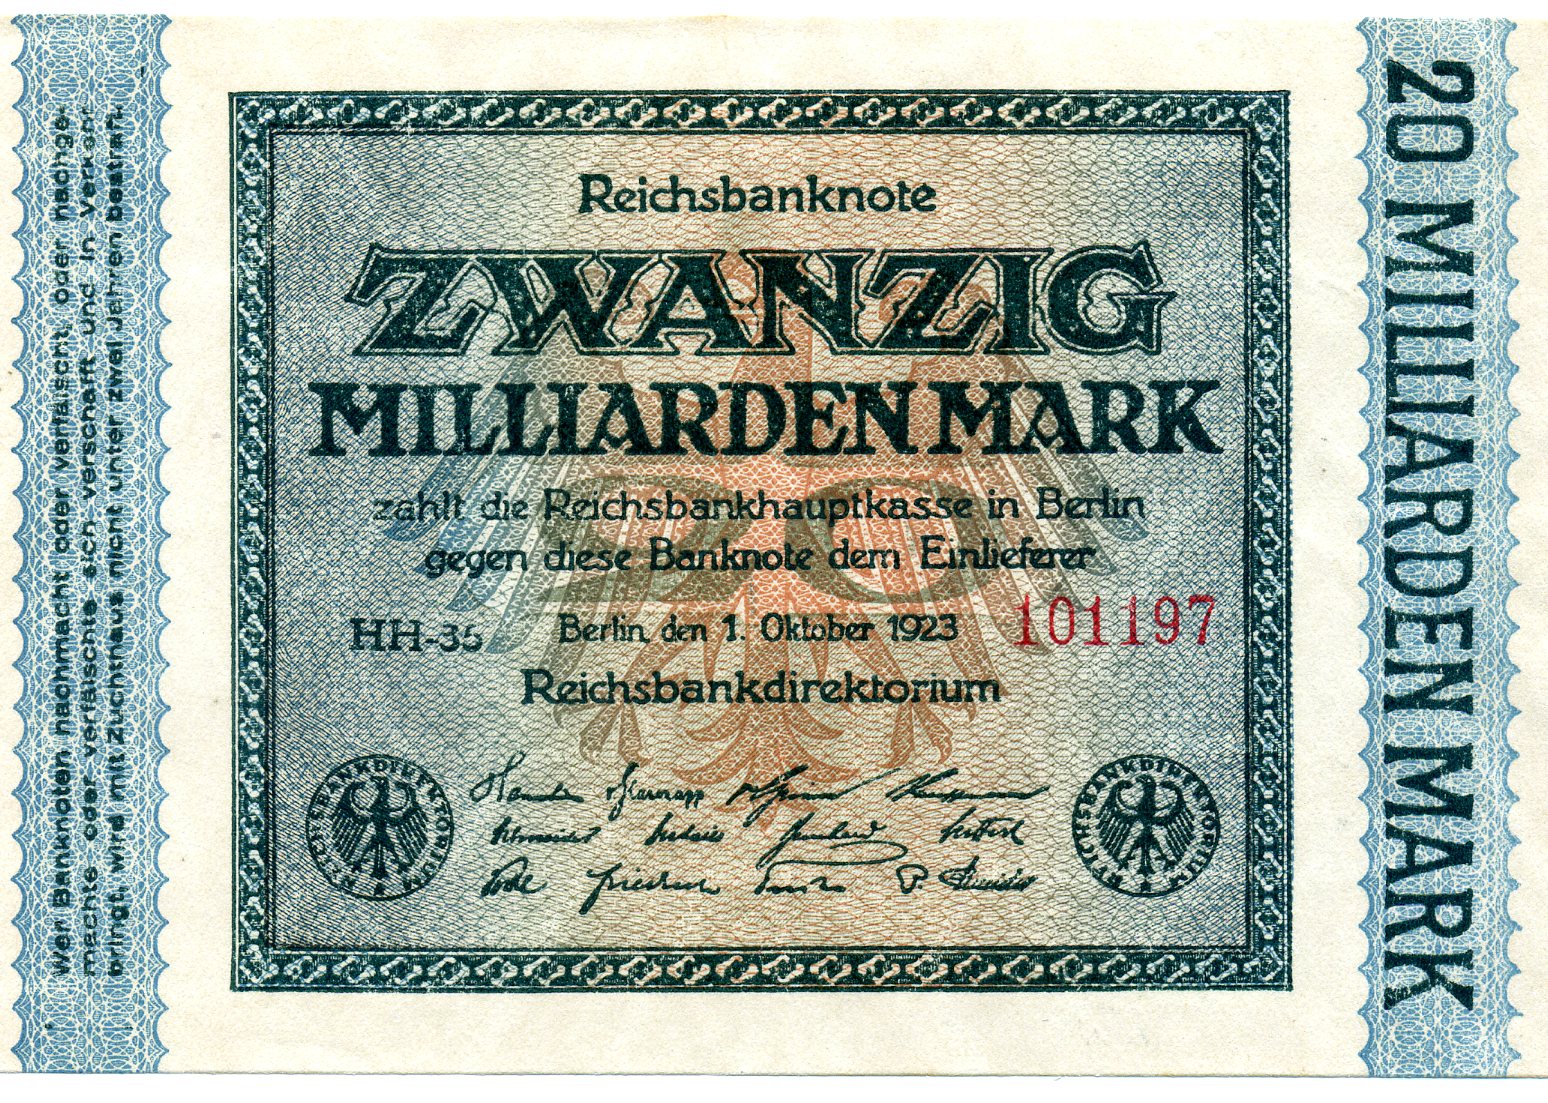 20 миллиардов марок 1 октября 1923 года. Реферат Рефератович.